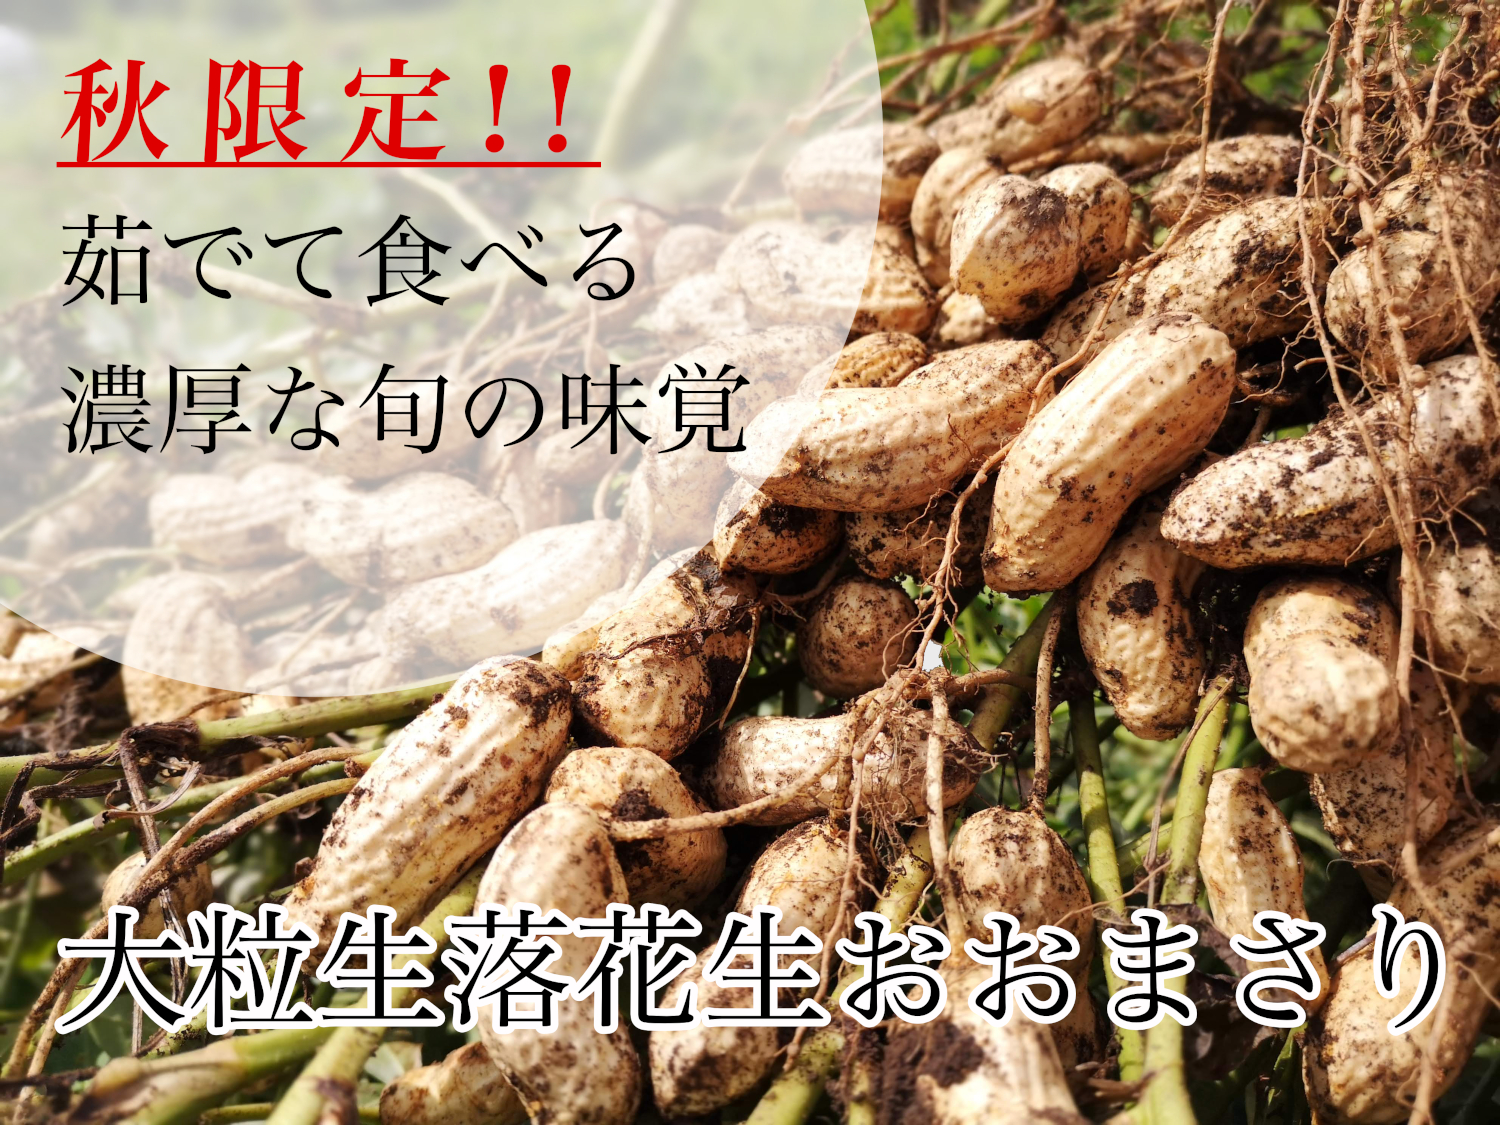 生落花生おおまさり販売 – 矢口農産 | 自然薯種芋生産販売 | 栃木県那須町